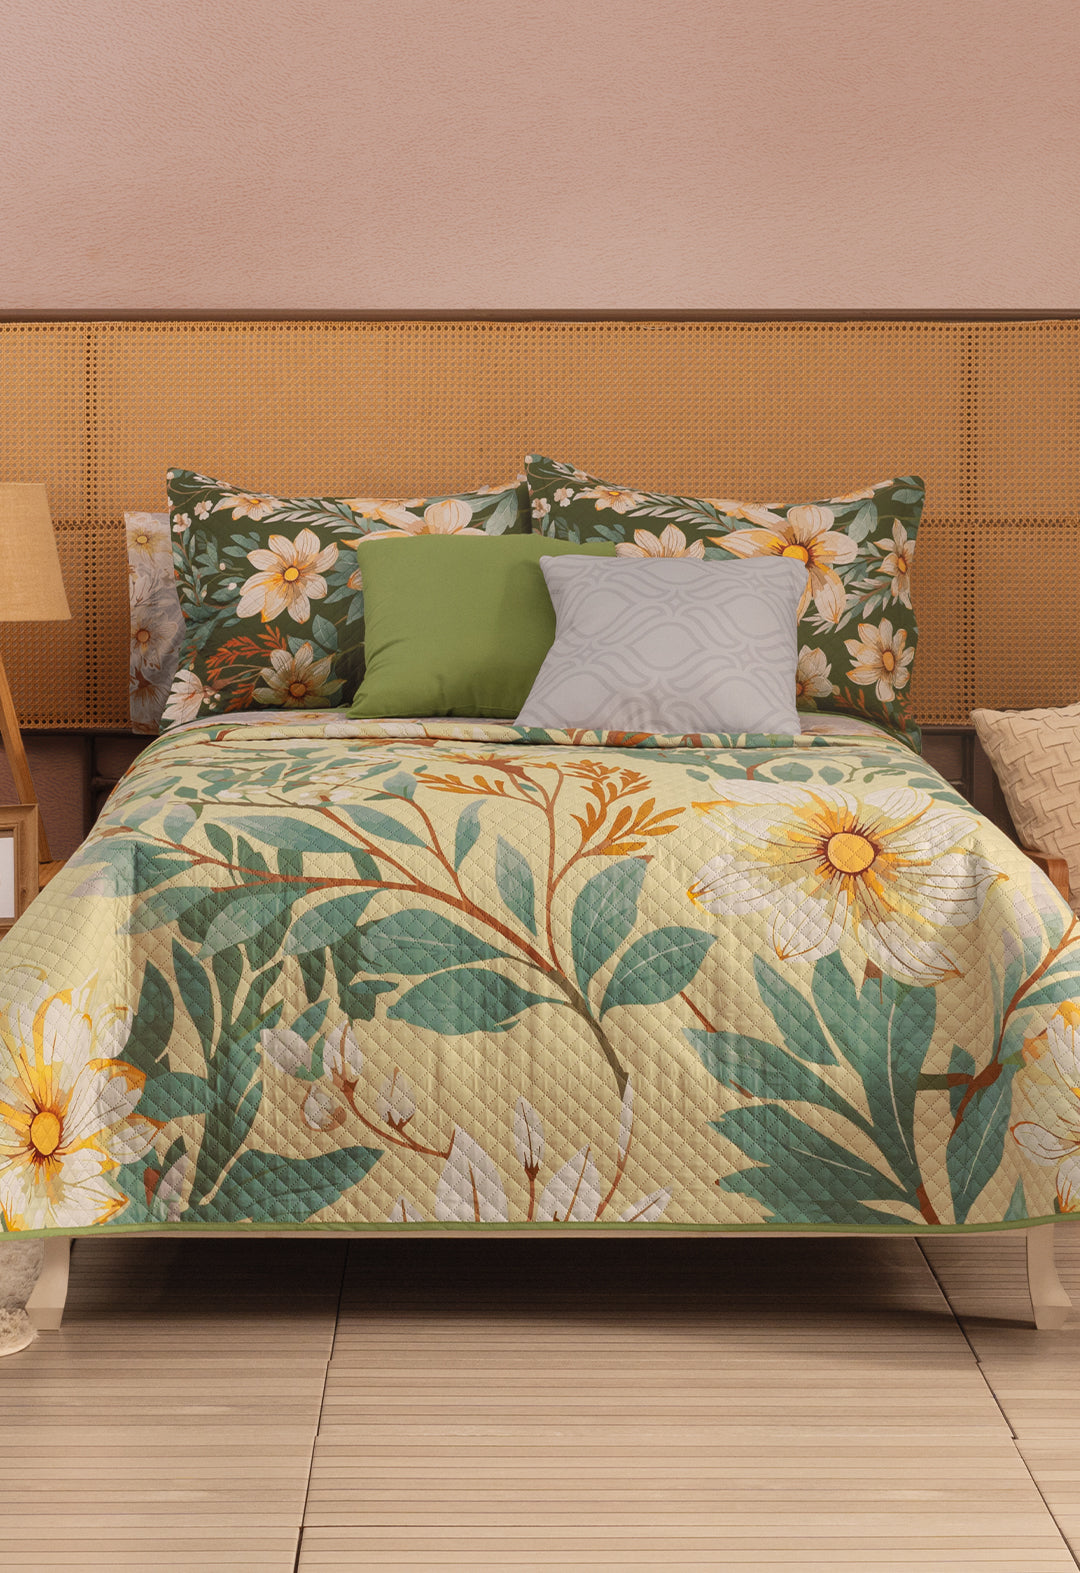 El Coordinado de Colcha Tifanny, con tonos verdes y amarillos, hermosos diseños florales y ademas incluye cojines.